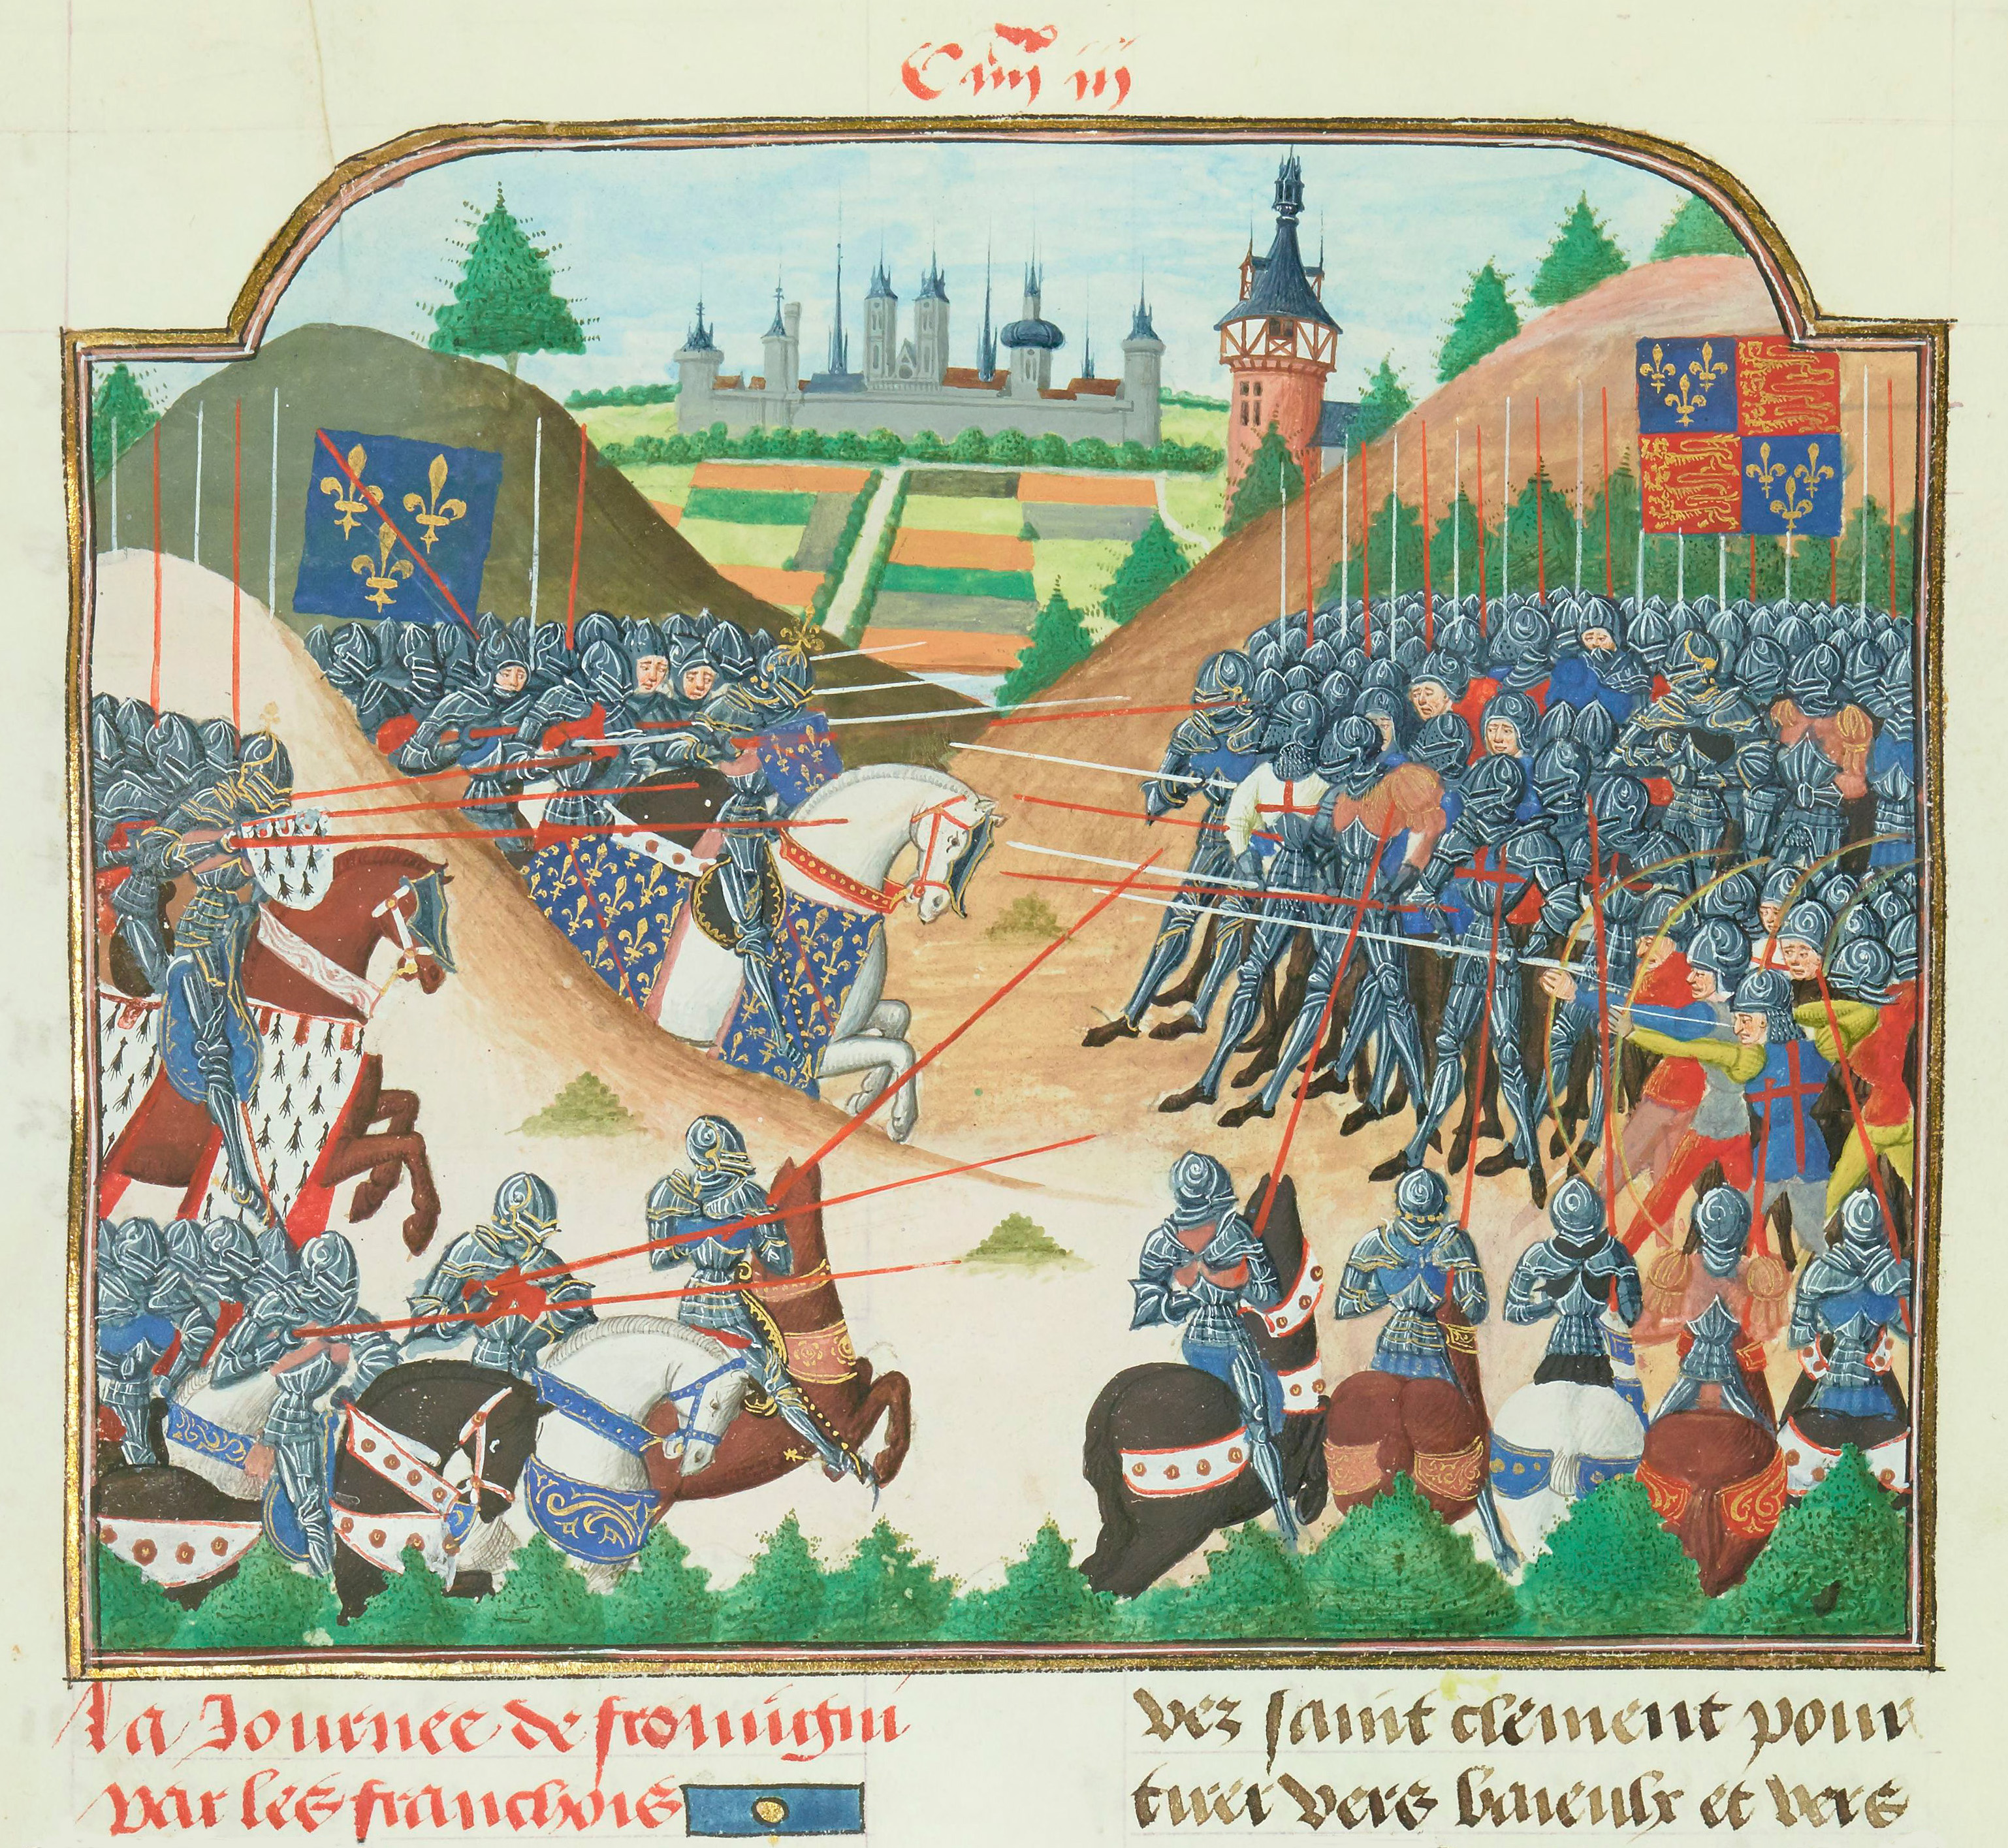 Bataille de Formigny